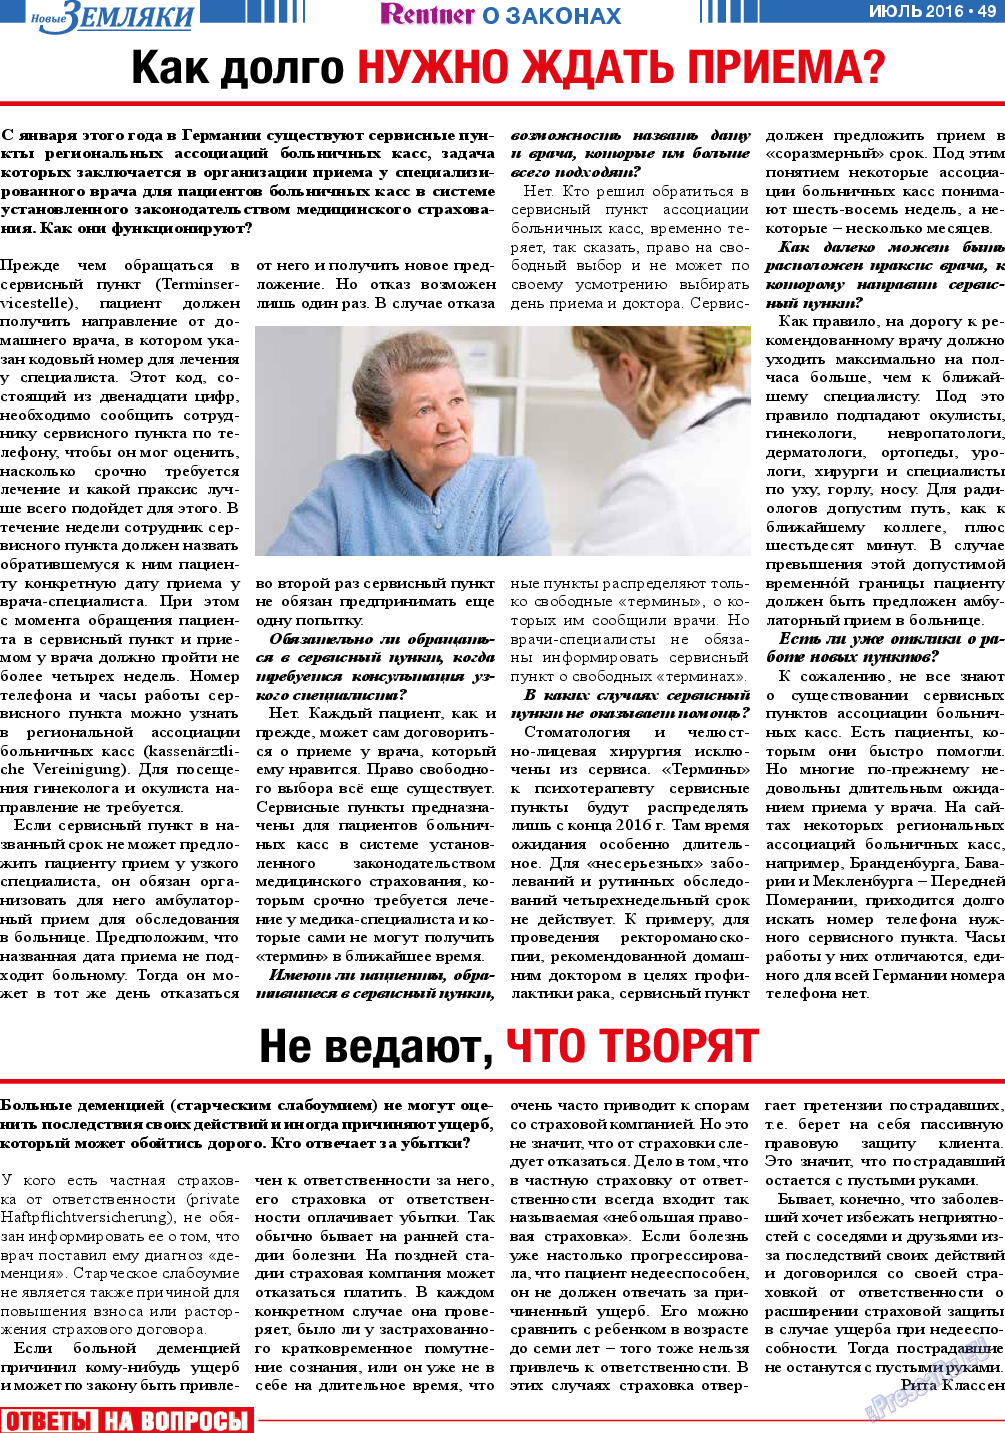 Новые Земляки, газета. 2016 №7 стр.49